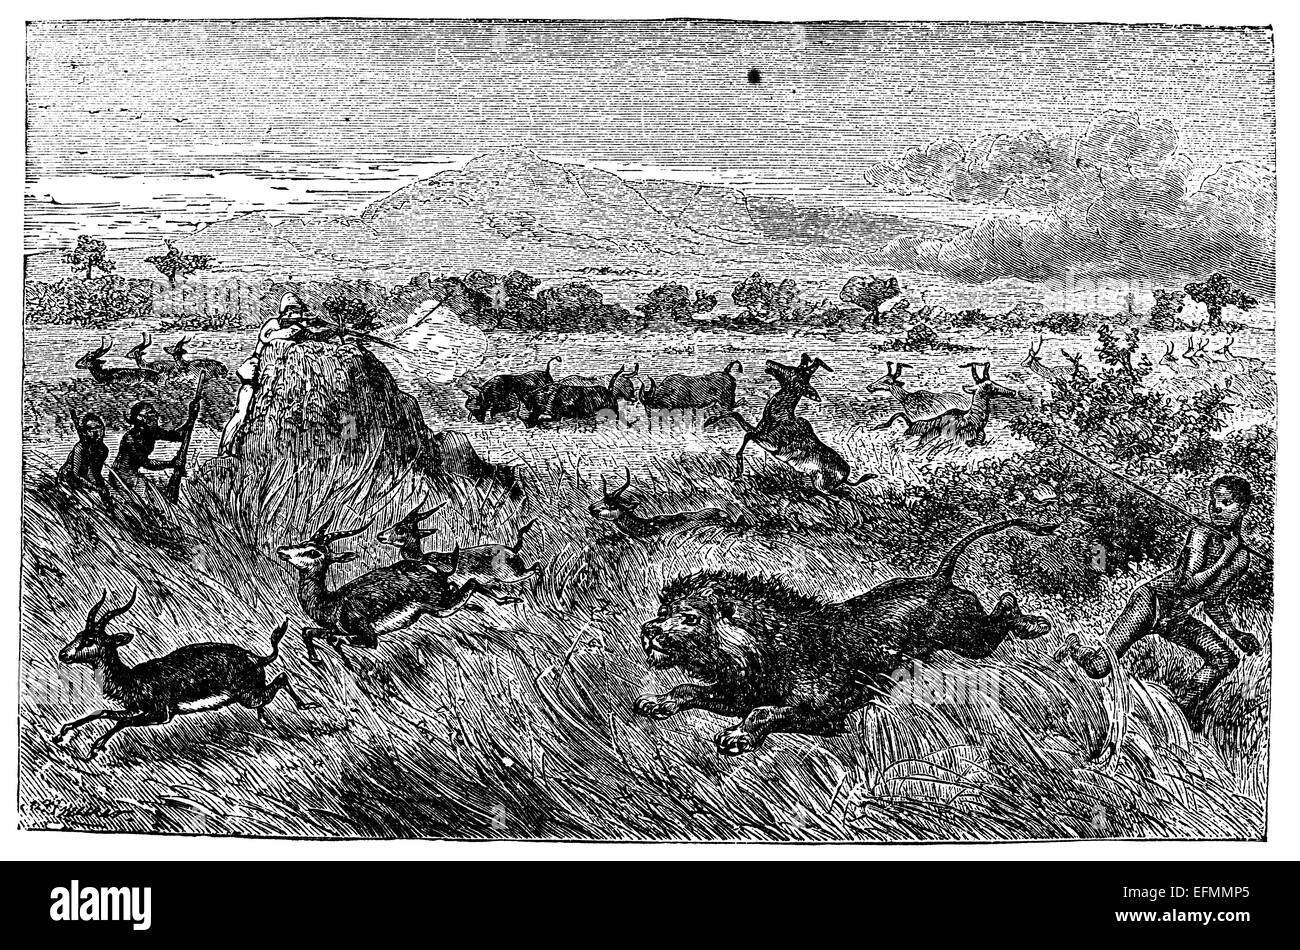 19ème siècle gravure de chasse, de gazelles, d'antilopes, de lion dans la savane en Afrique Banque D'Images